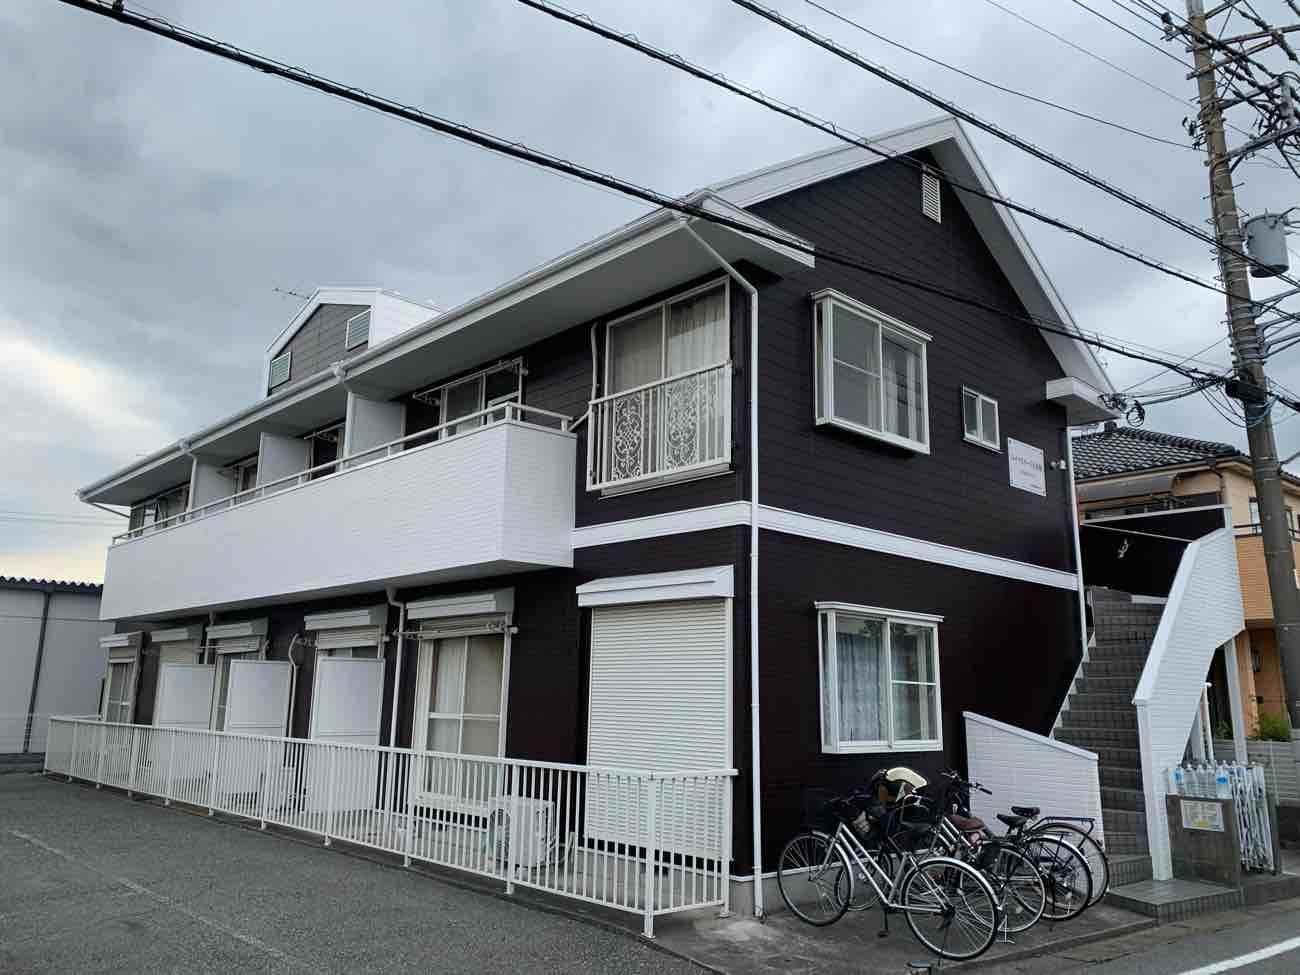 【埼玉県吉川市】Y様賃貸住宅外壁屋根塗装工事が完了しました。アレスダイナミックTOP 関西ペイント 画像